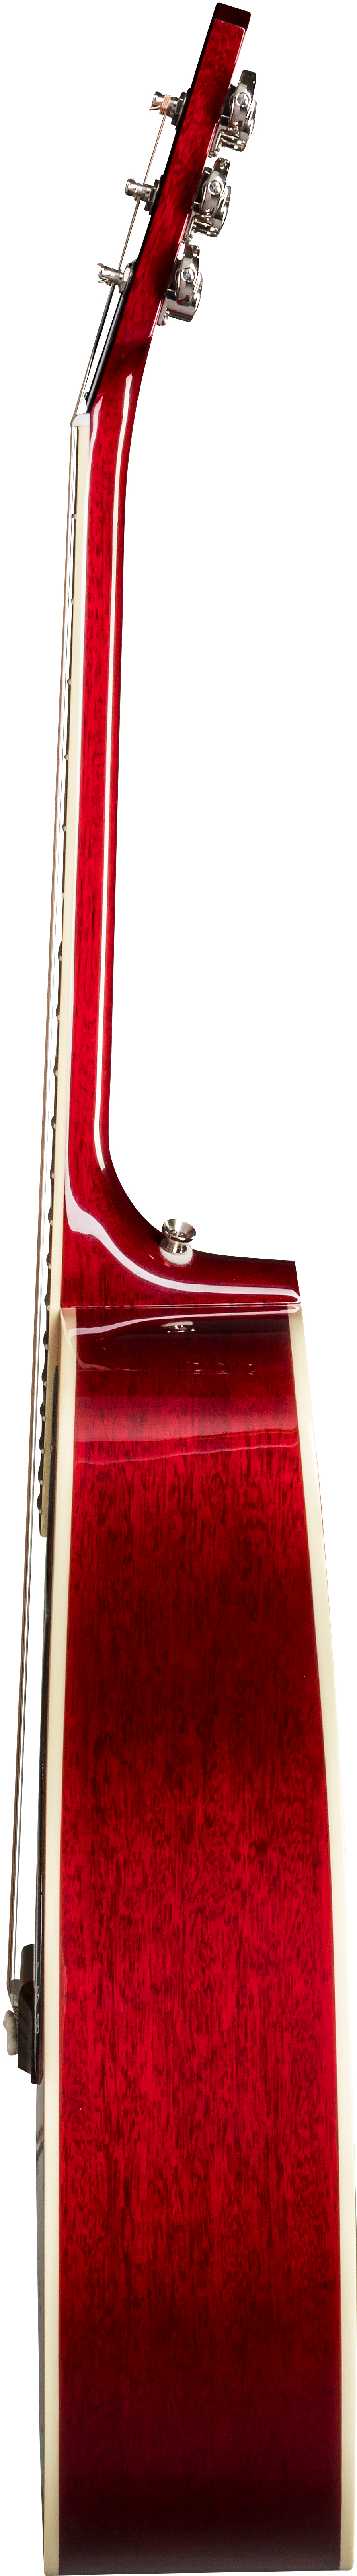 Gibson Hummingbird 2019 Dreadnought Epicea Acajou Rw - Vintage Cherry Sunburst - Westerngitarre & electro - Variation 3